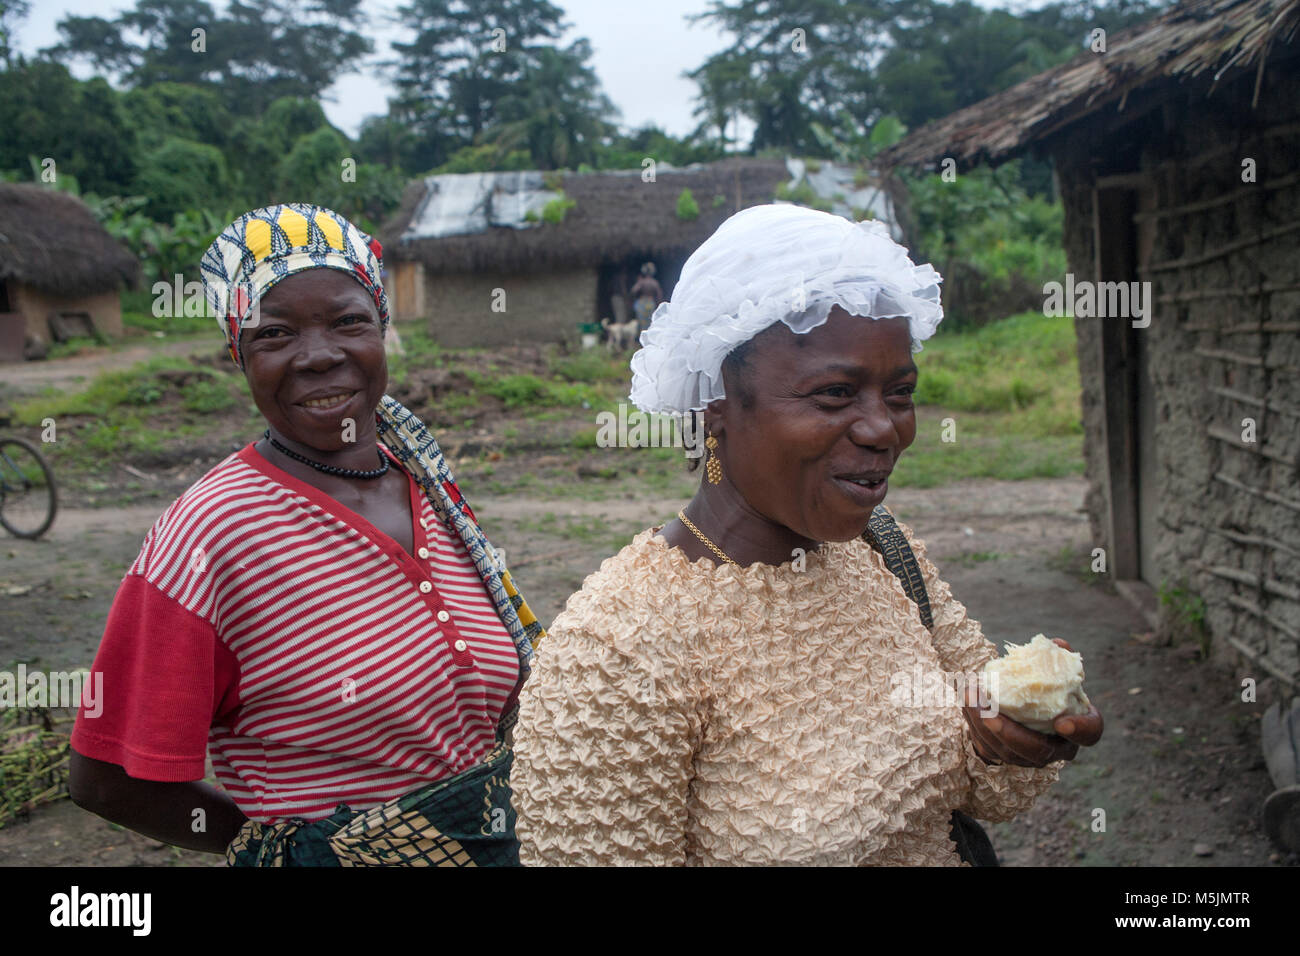 Women  sell palm oil in rural Sierra Leone Stock Photo